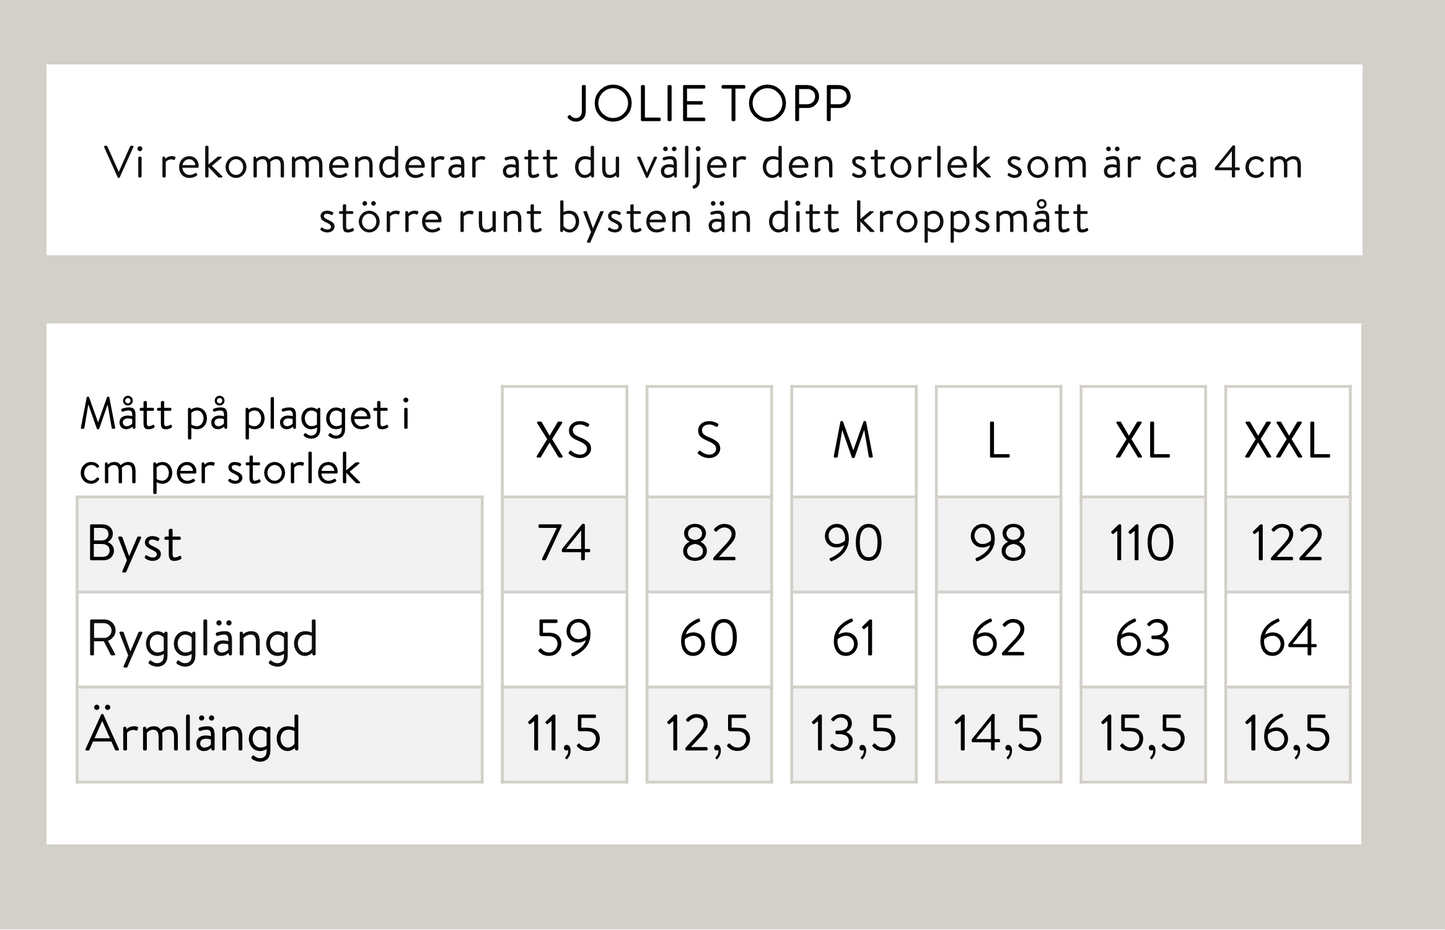 Jolie topp - Ljusbeige